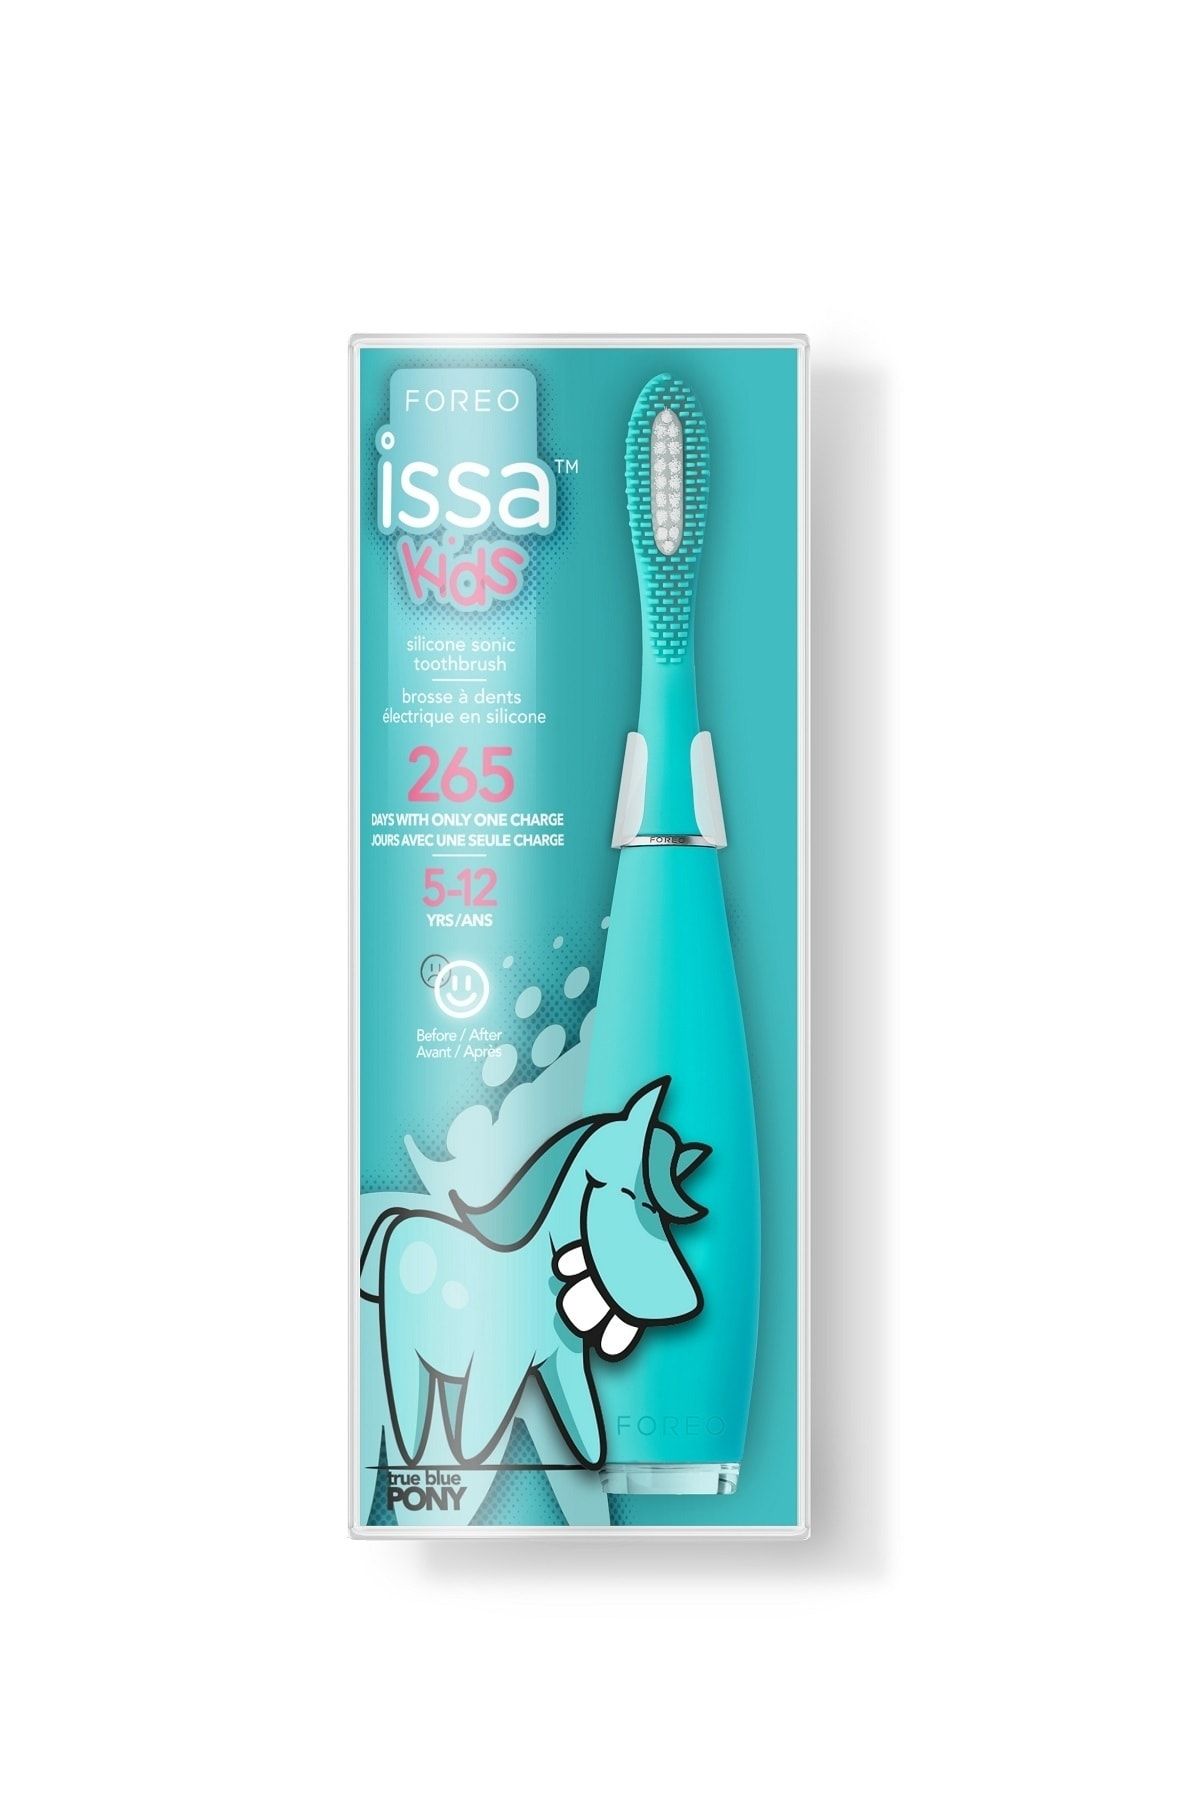 Foreo Issa™ Kids Çocuk Diş Fırçası (5-12 Yaş Için), True Blue Pony